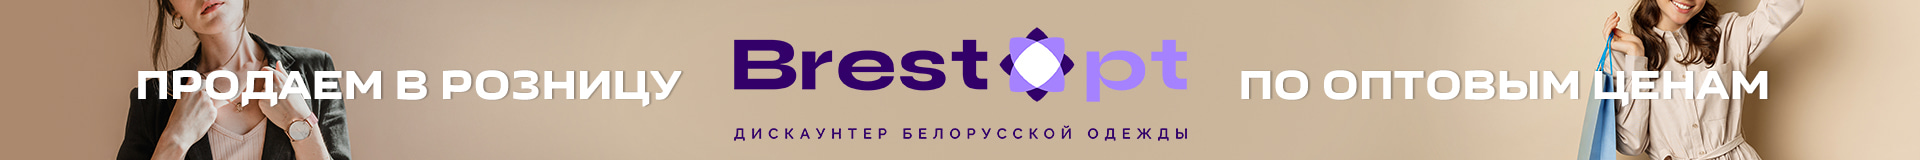 BrestOpt - продаем в розницу по оптовым ценам